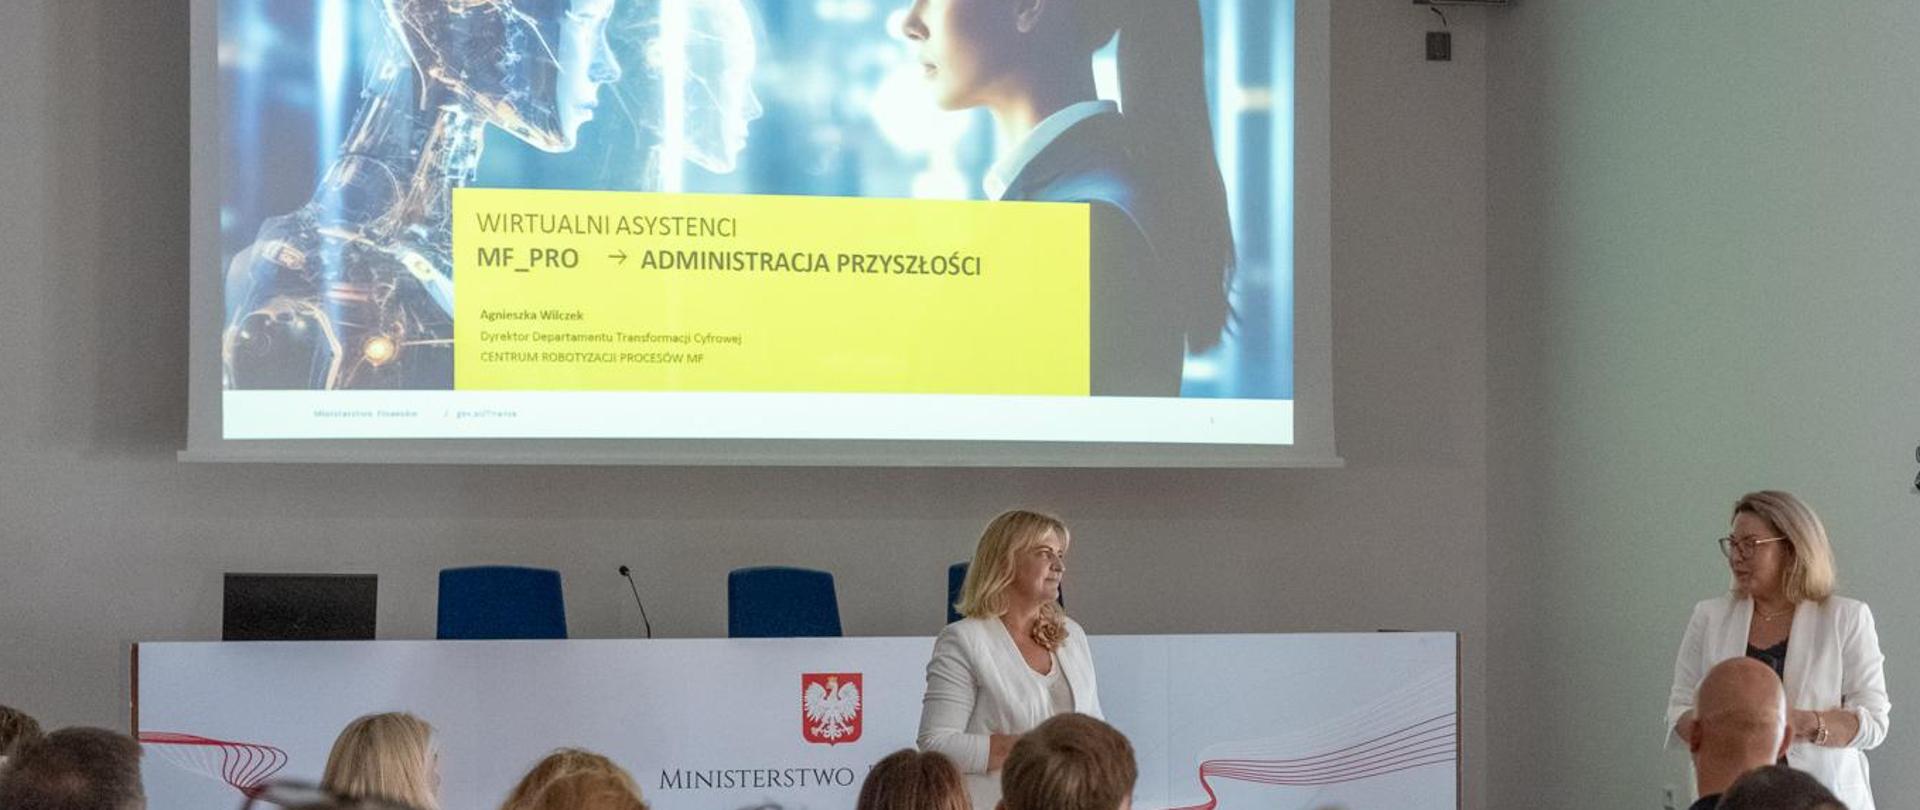 Dyrektor Generalna Marta Niżałowska-Pactwa i Agnieszka Wilczek, pełnomocnik Ministra Finansów ds. IT i AI w Ministerstwie Finansów na sali konferencyjnej